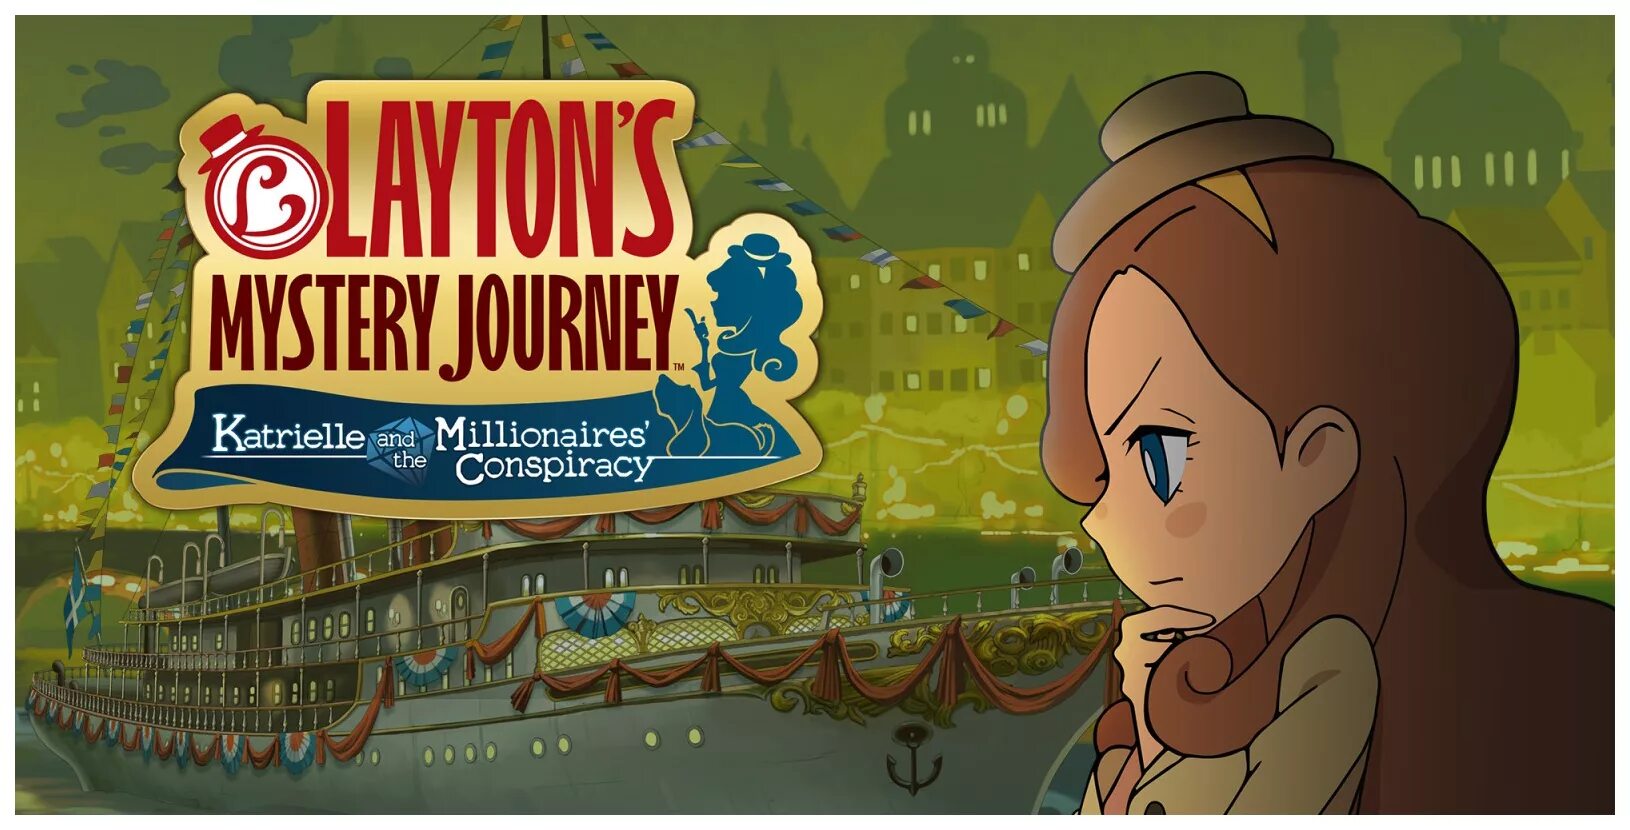 Mystery journey. Laytons Mystery Journey Katrielle. Layton's Mystery Journey: Katrielle and the Millionaires' Conspiracy. Layton's Mystery Journey. Layton Nintendo Switch.